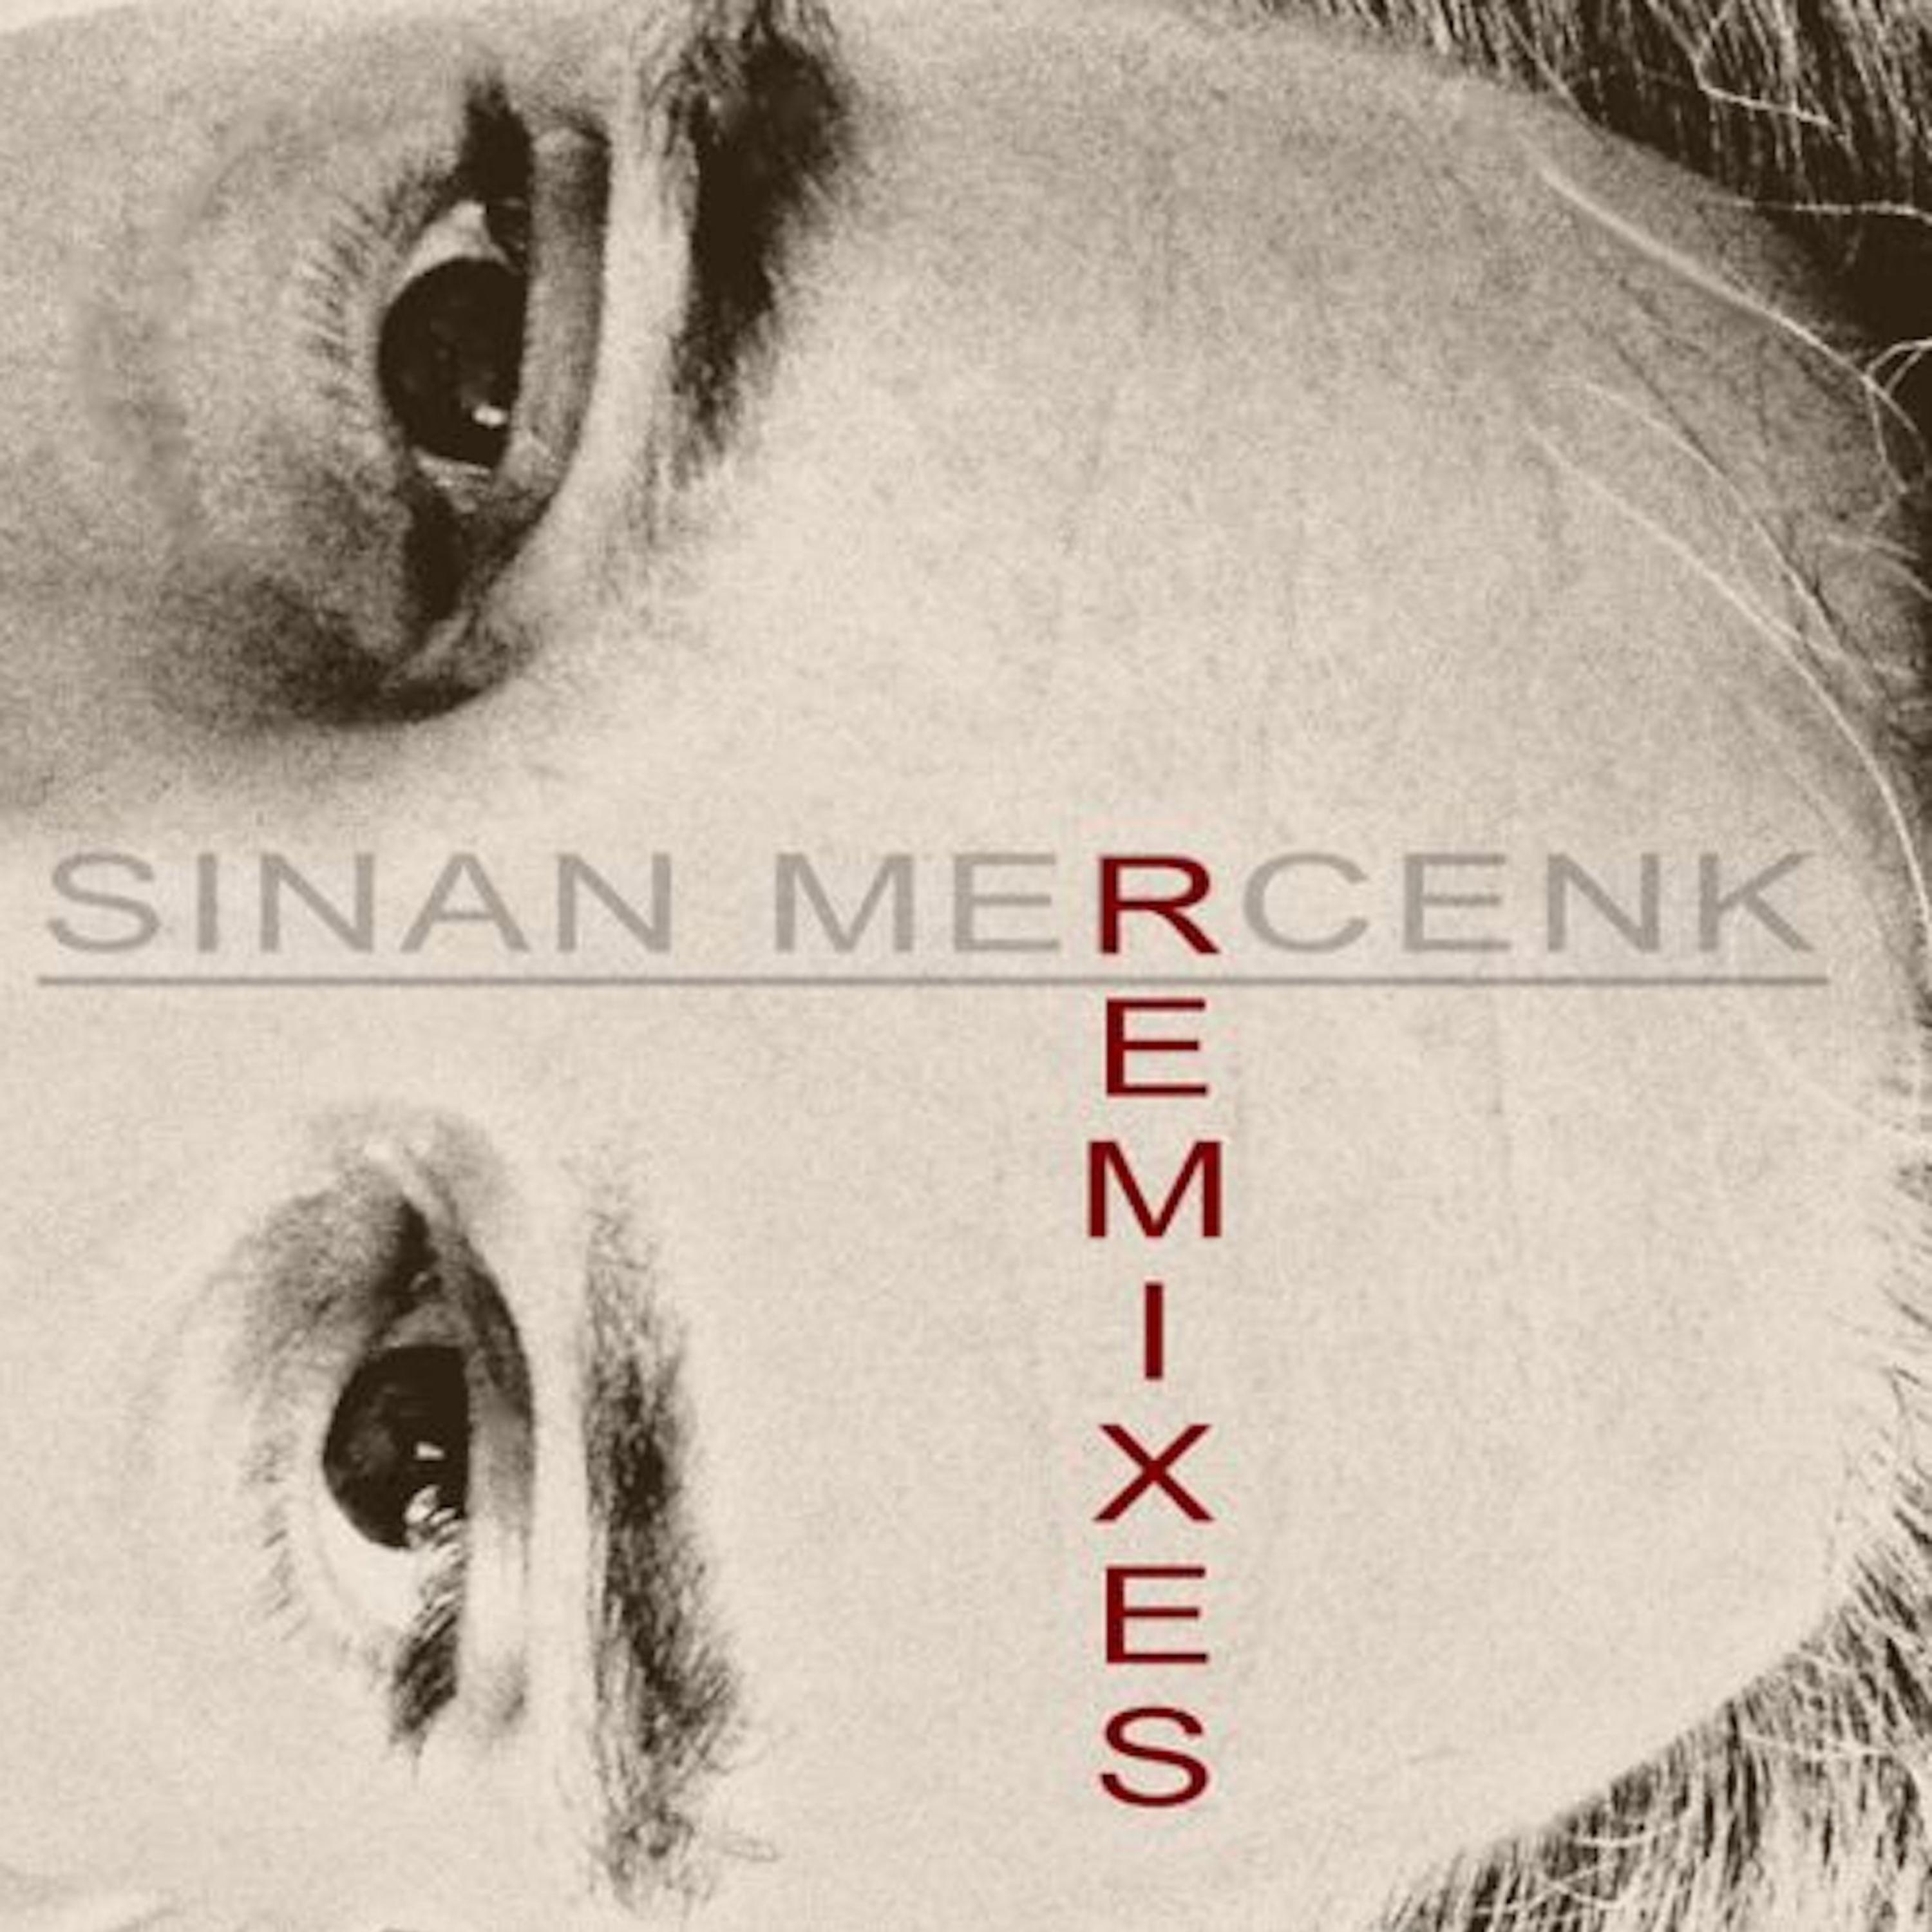 No Story (Sinan Mercenk's Remix)